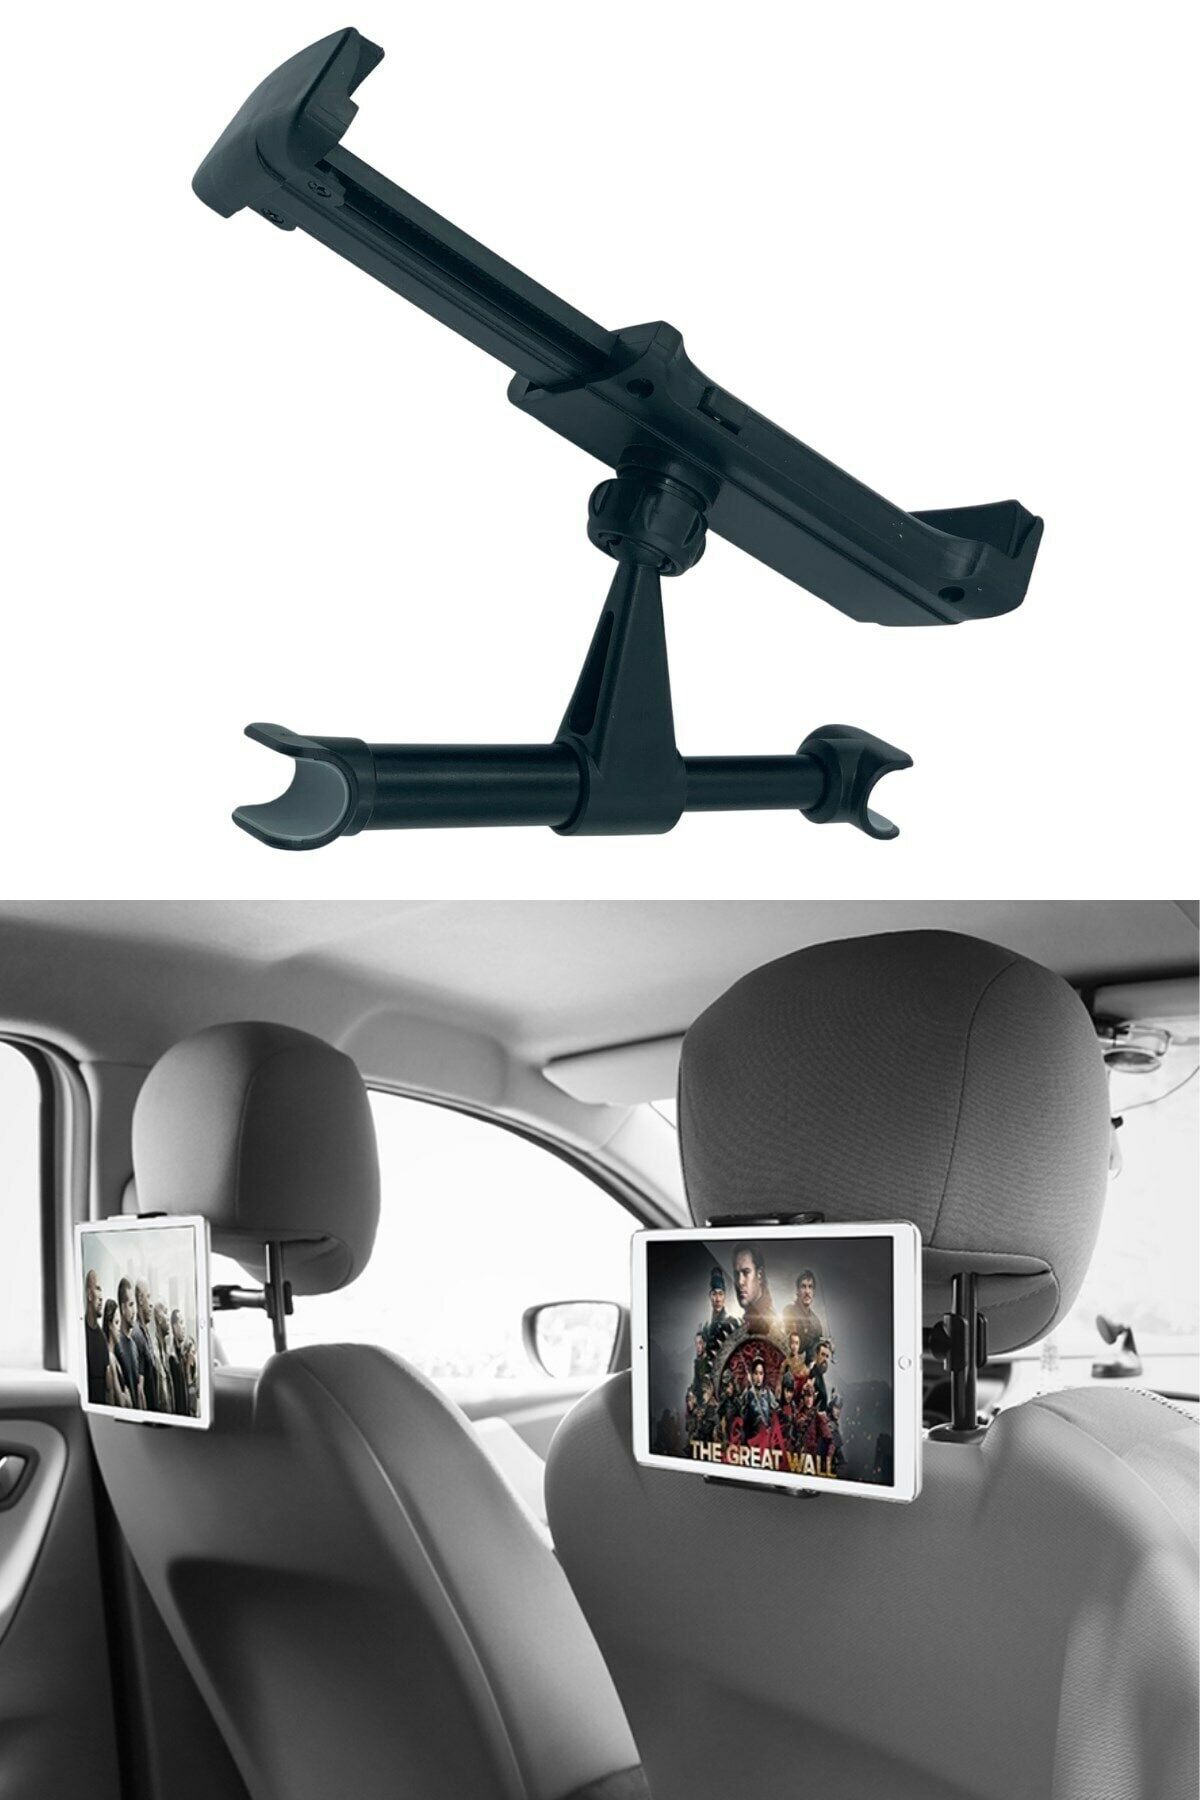 2 Adet Araba Oto Koltuk Arkası Telefon Tablet Tutucu Ayarlanabilir 360 Derece Dönebilen Pratik Stand